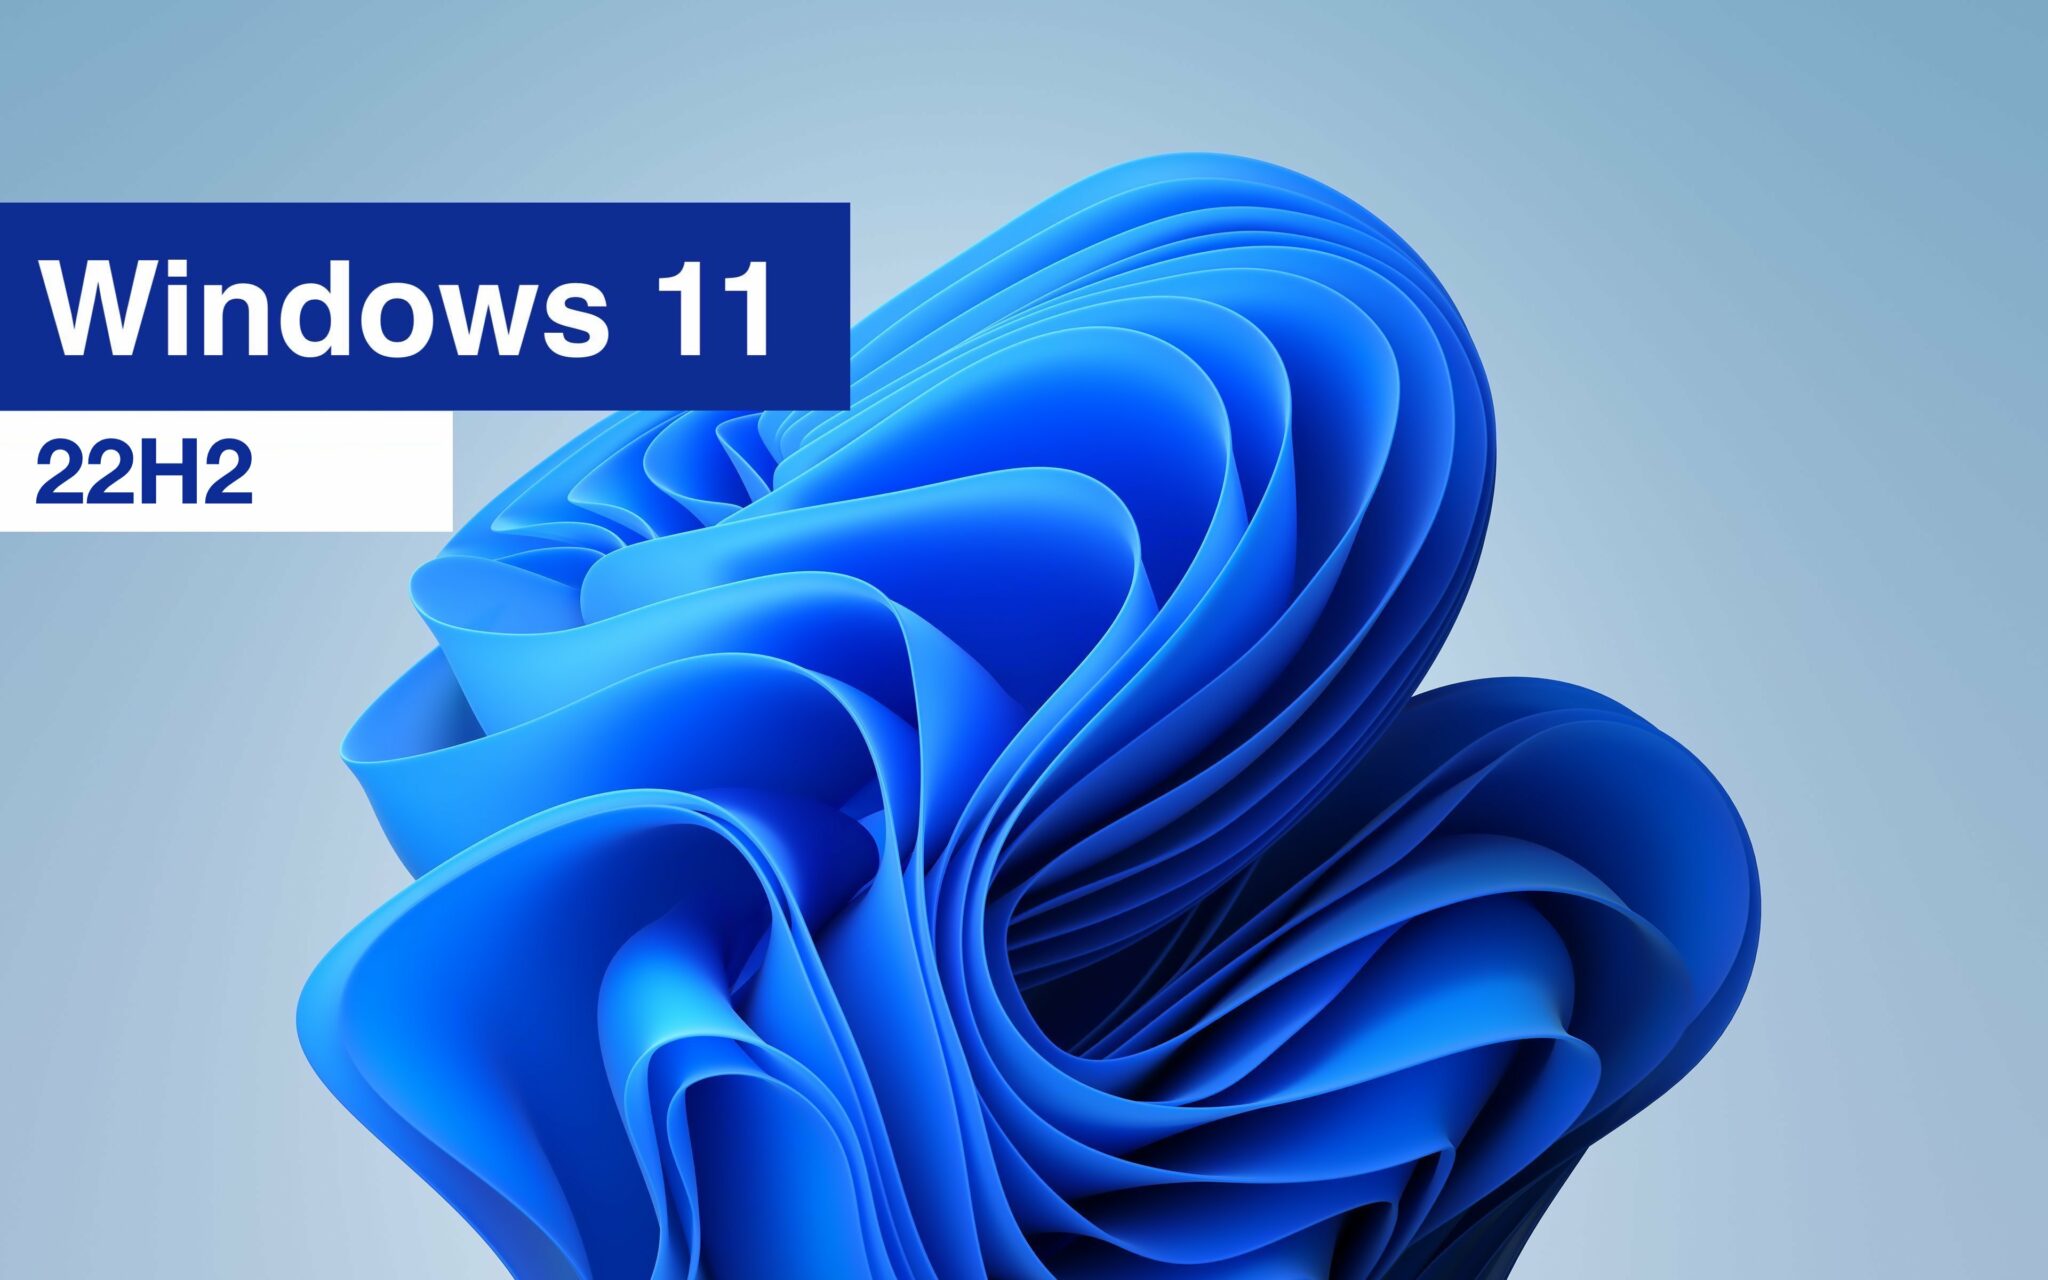 Bản cập nhật lớn đầu tiên cho Windows 11 dự kiến ra mắt mùa hè năm nay - 22H2 Sun Valley 2